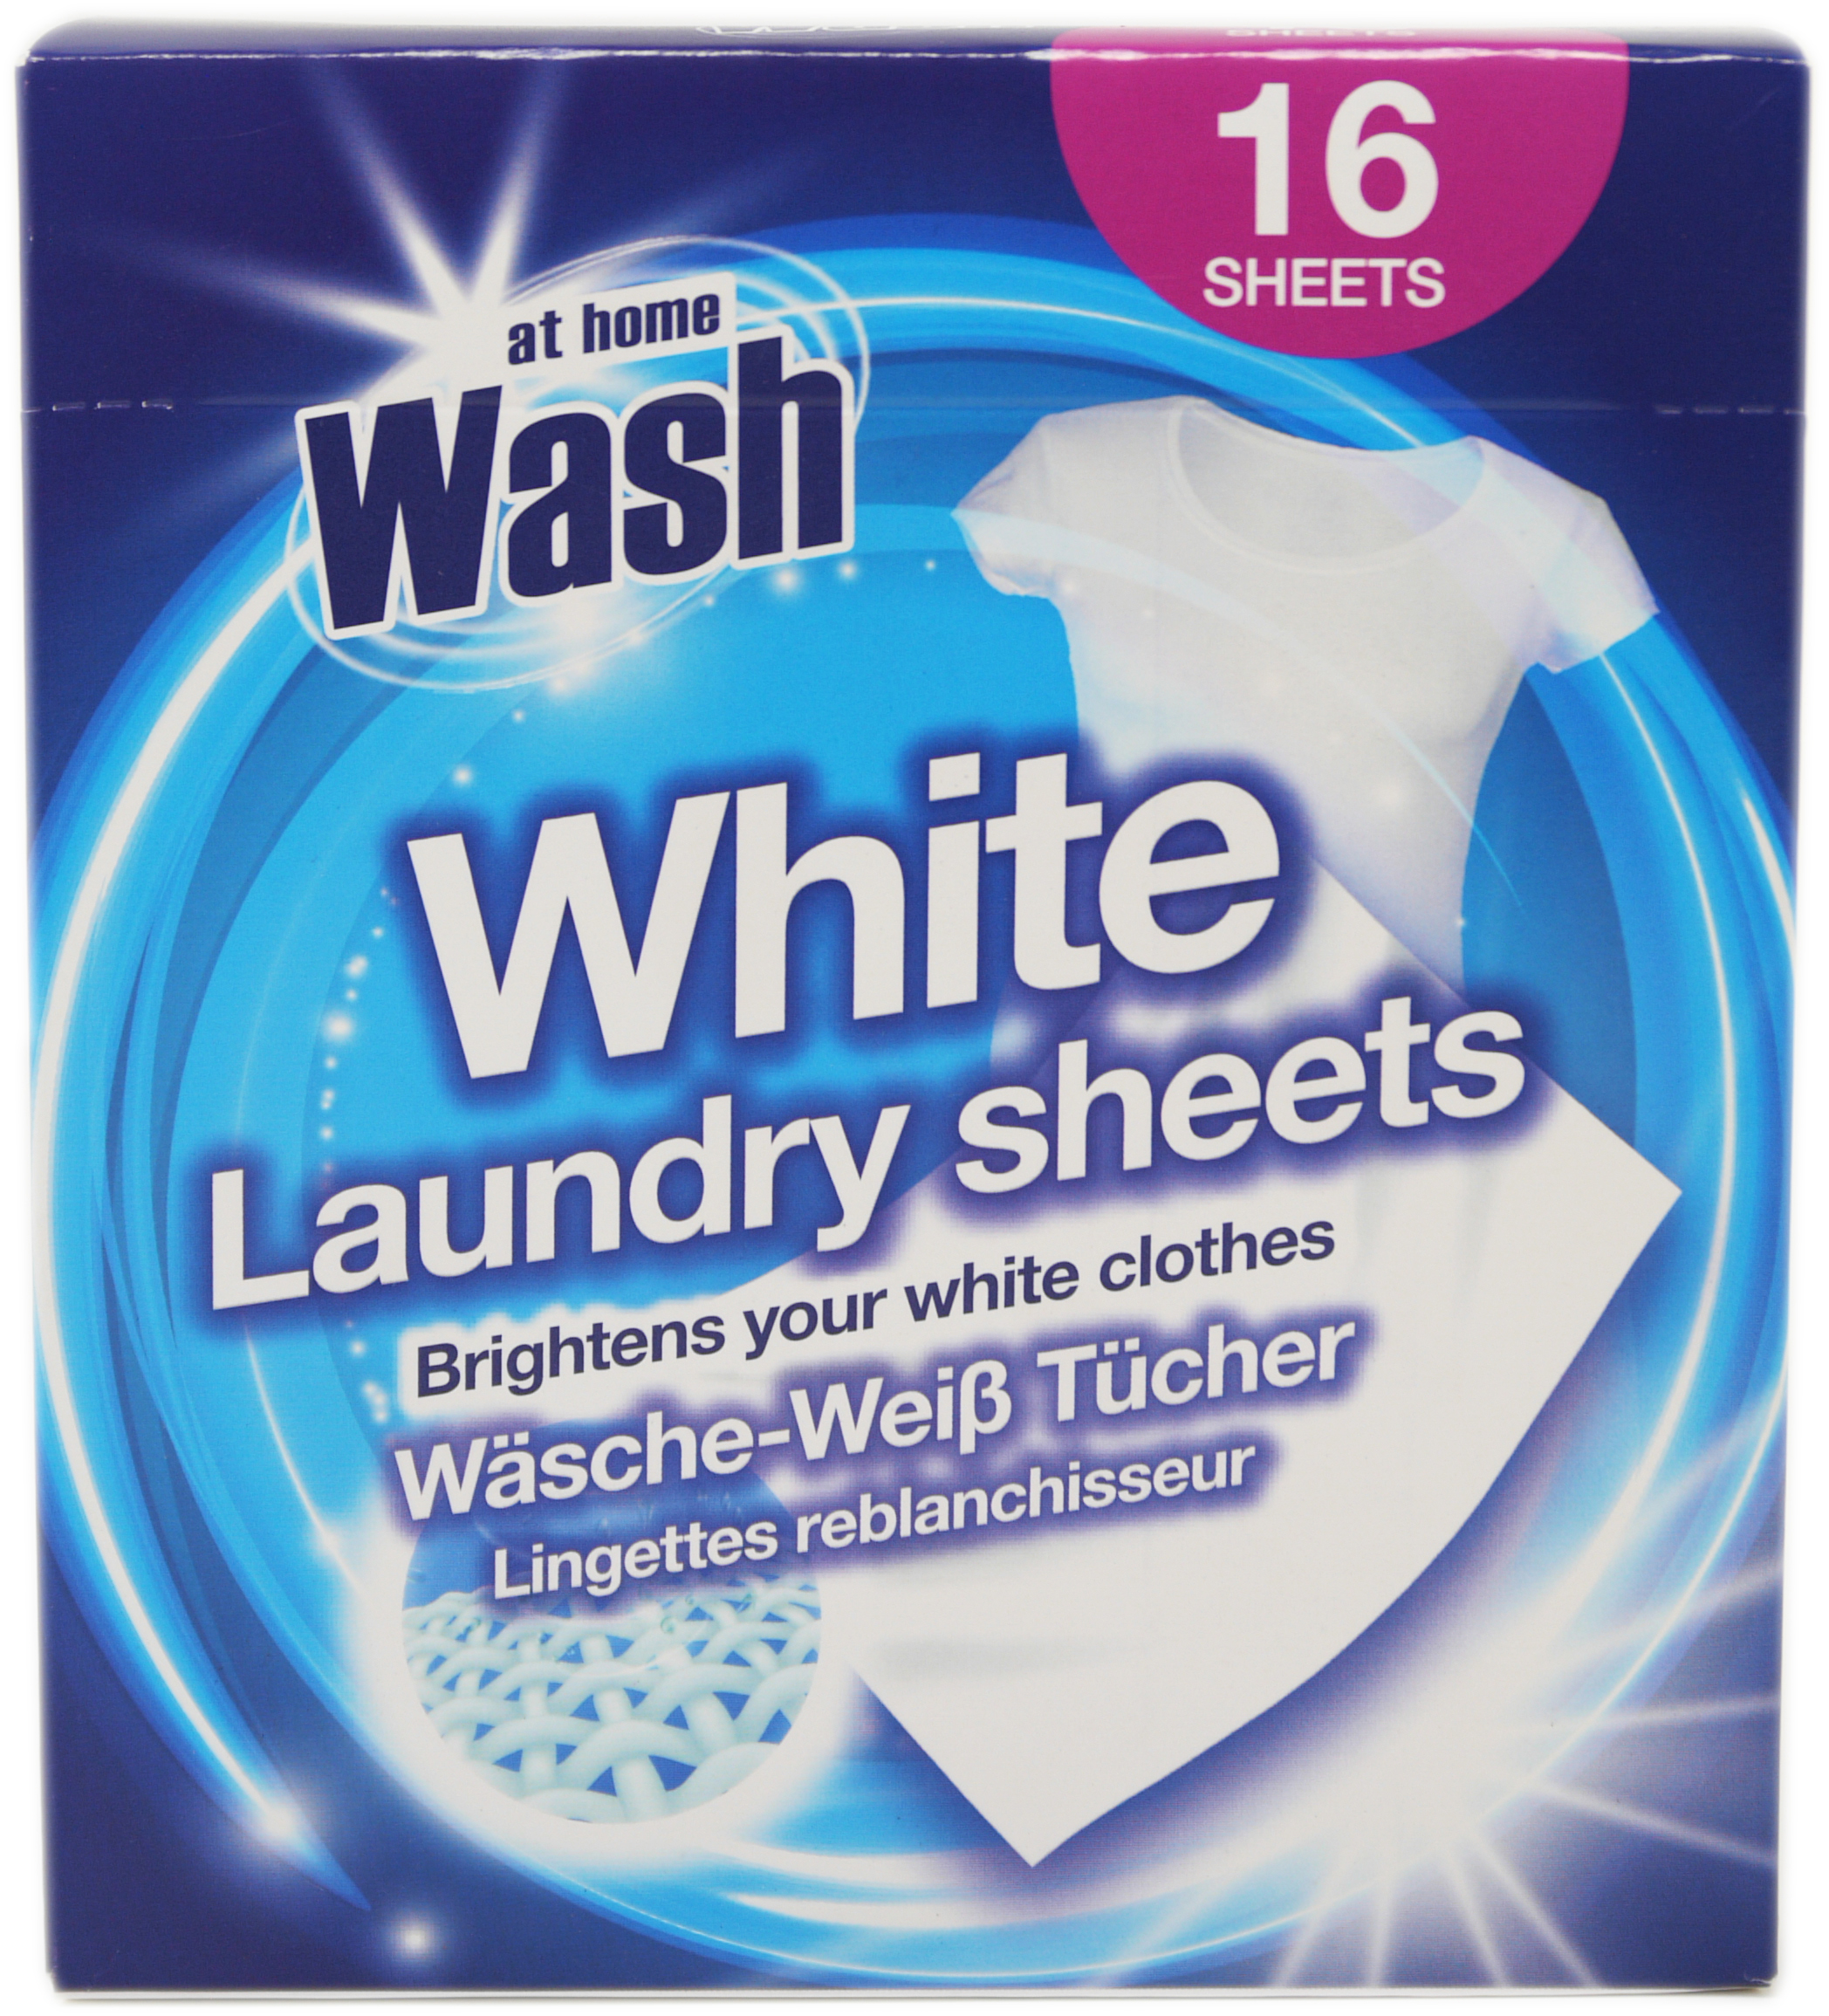 04044 - Laundry sheets 